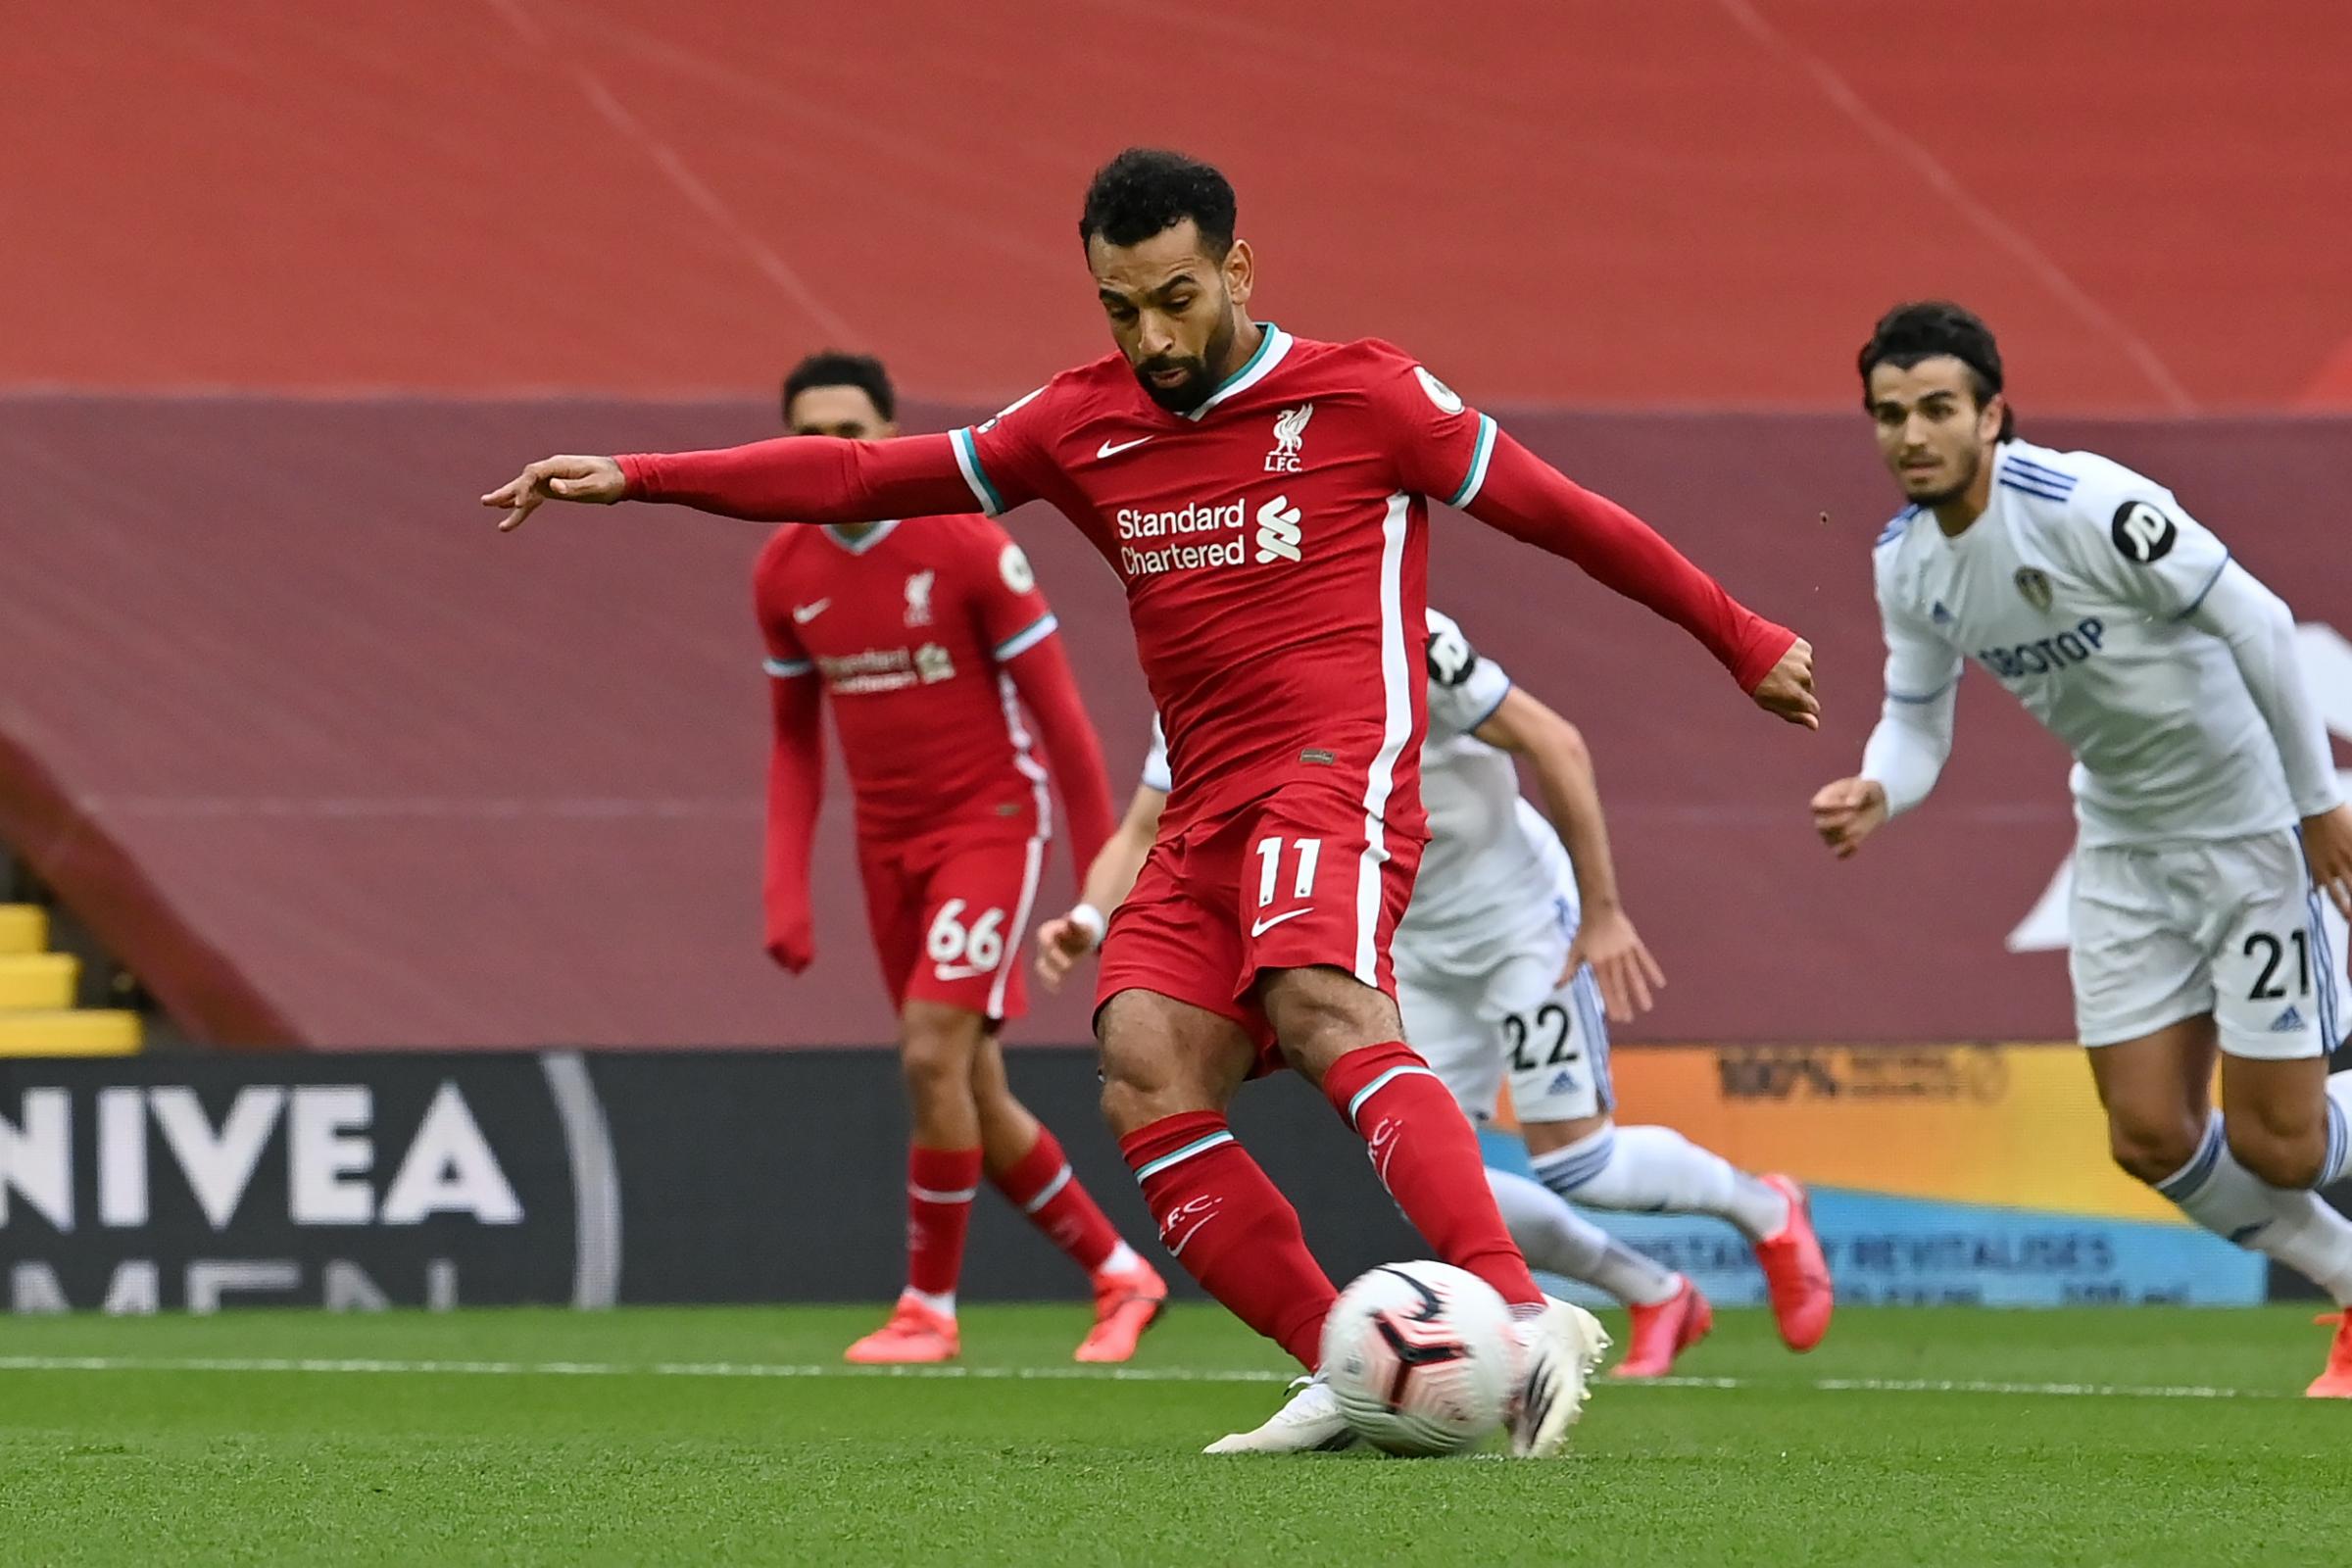 Jurgen Klopp hails Mo Salah ‘special player’ after win against Leeds